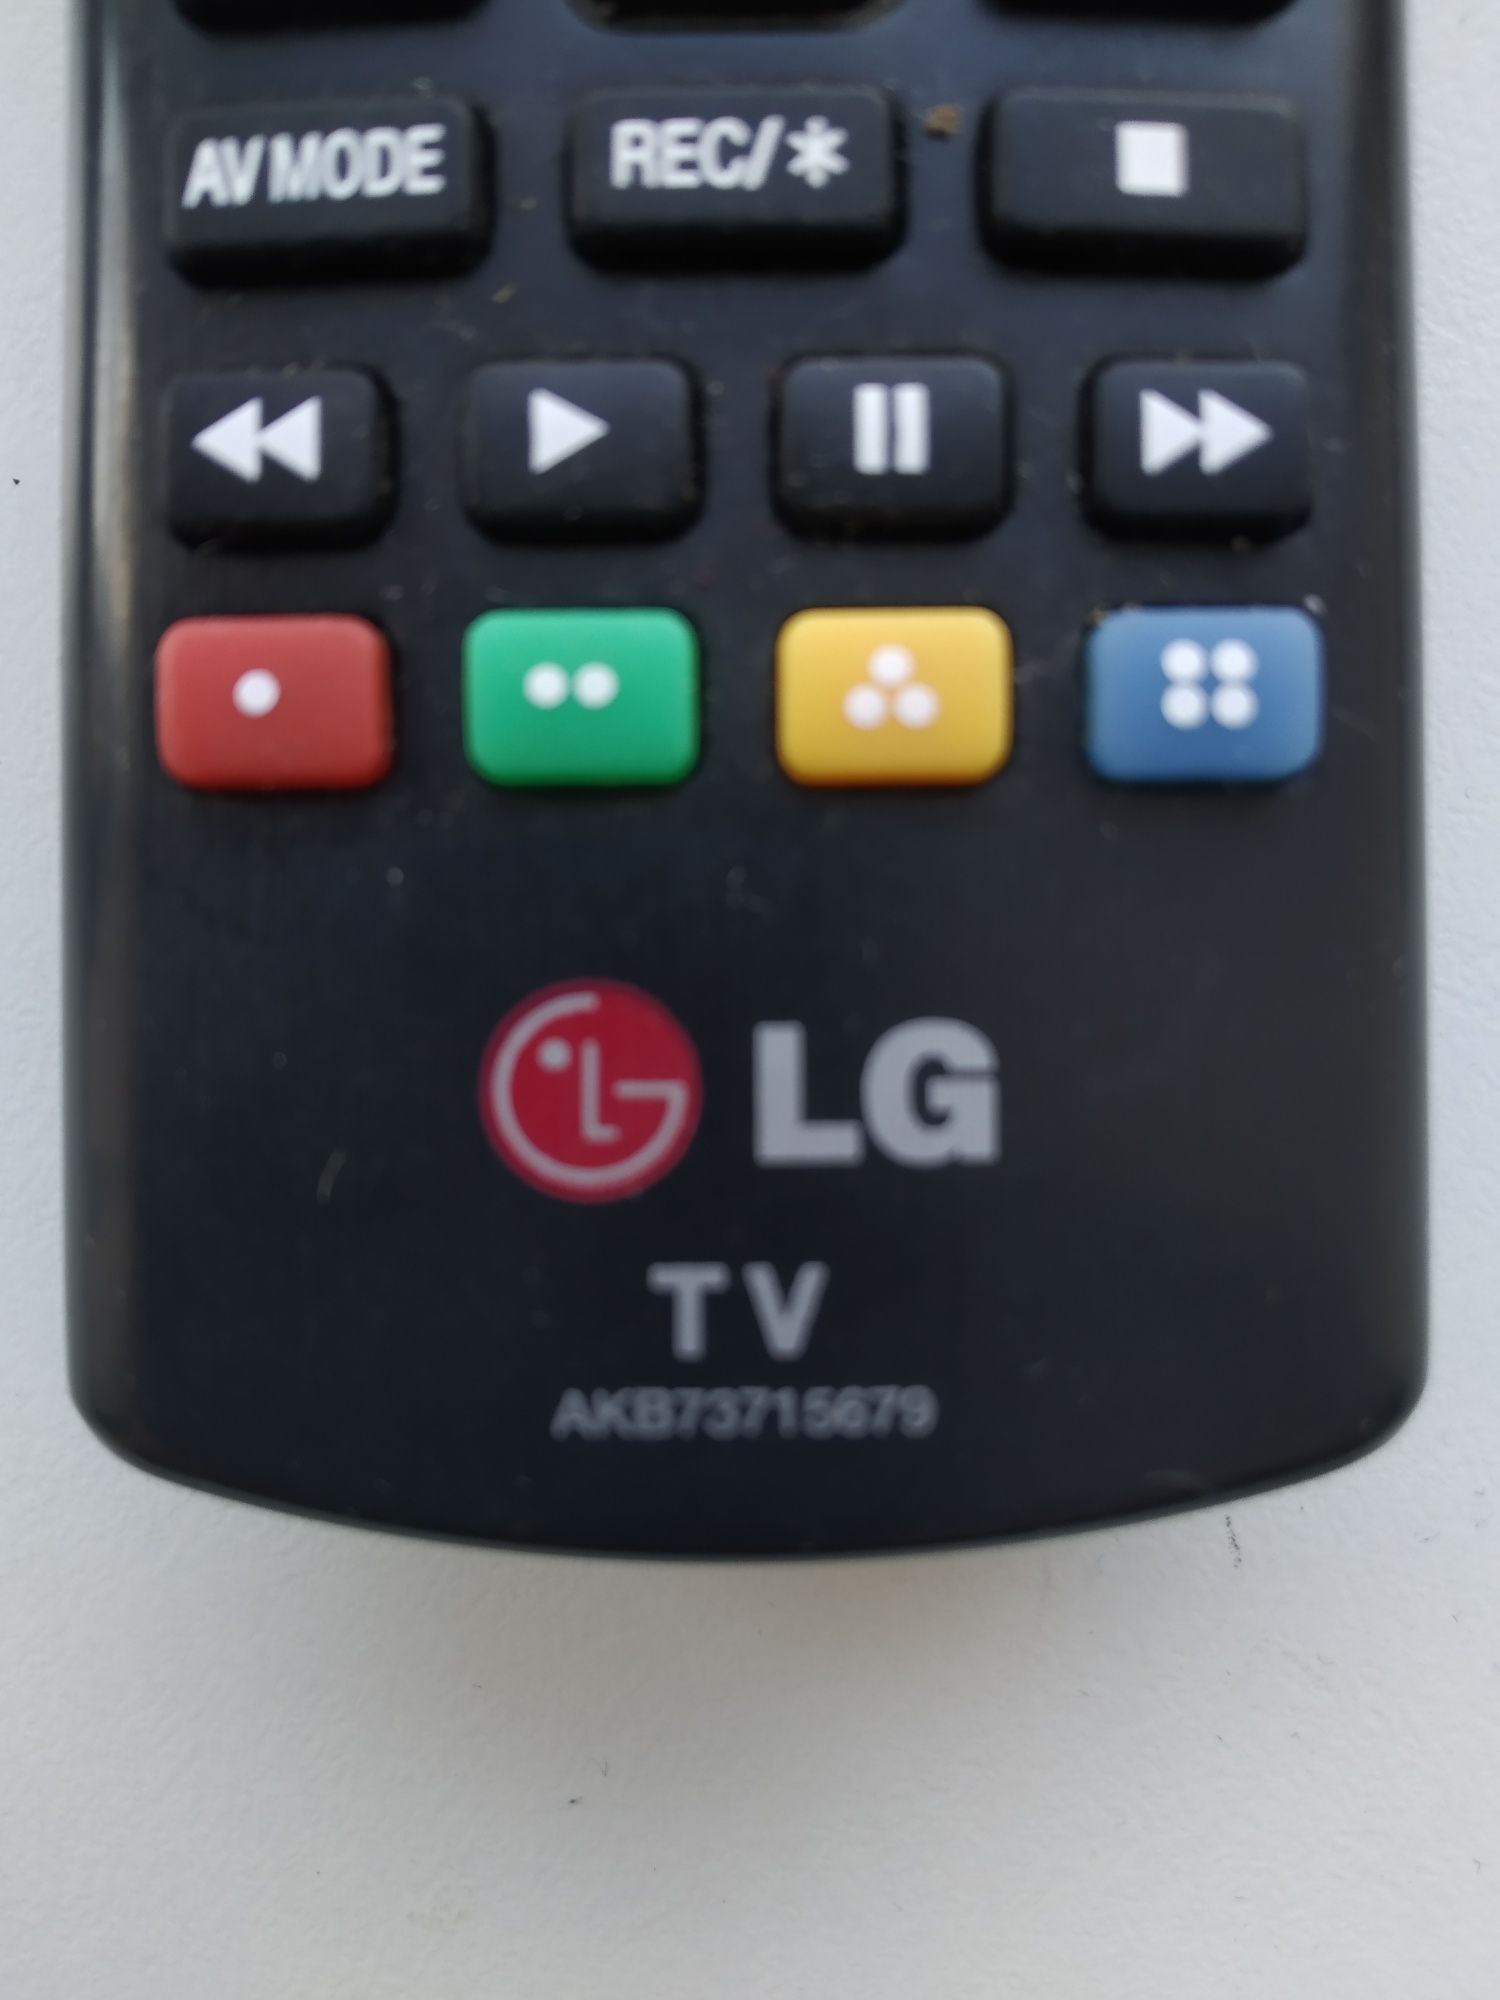 Пульт АКВ 73715679 от TV LG.